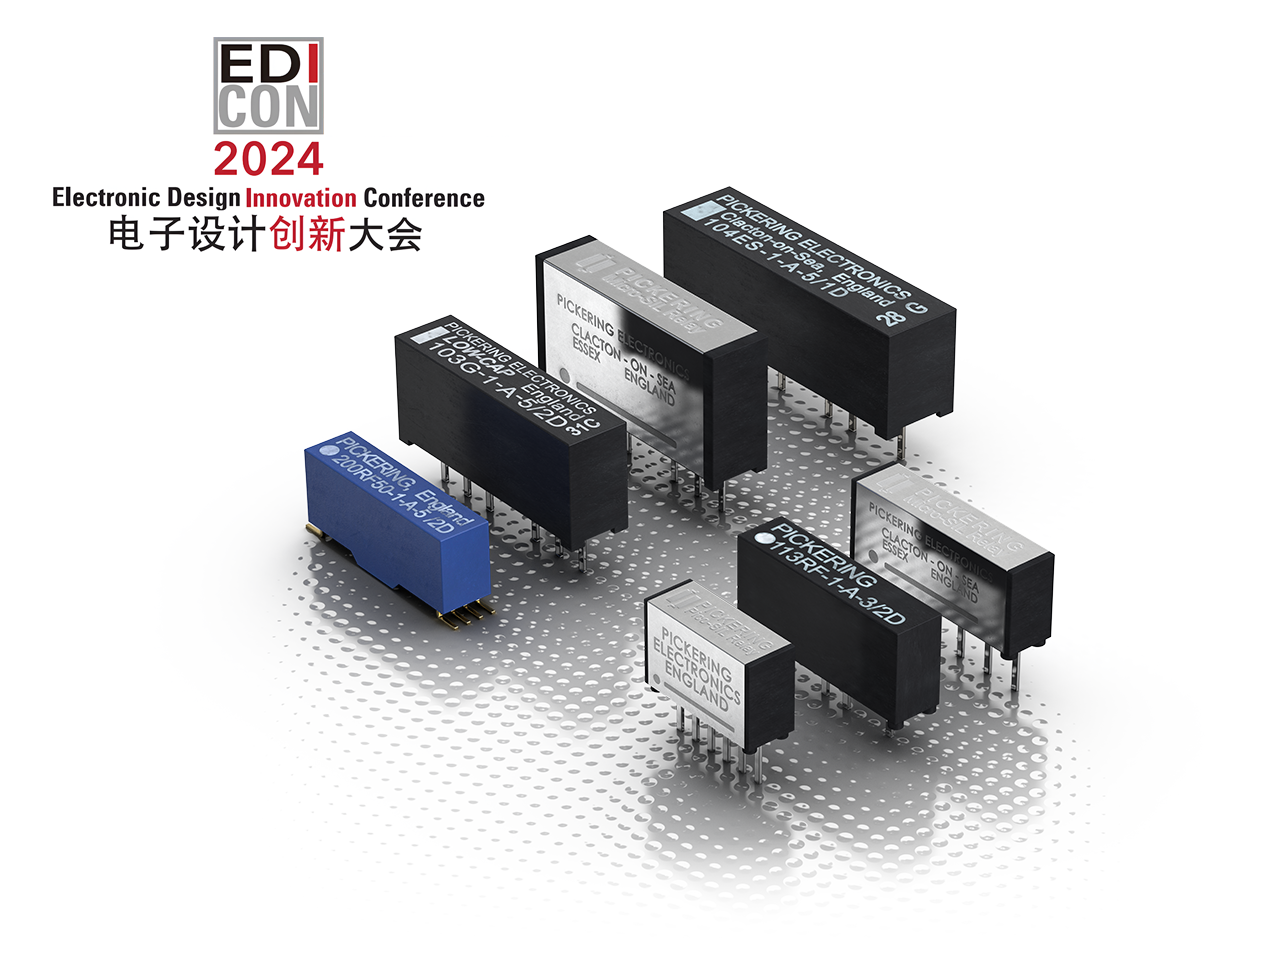   英國Pickering Electronics公司將于EDI Con2024 展出 用于高速數字開關的同軸舌簧繼電器